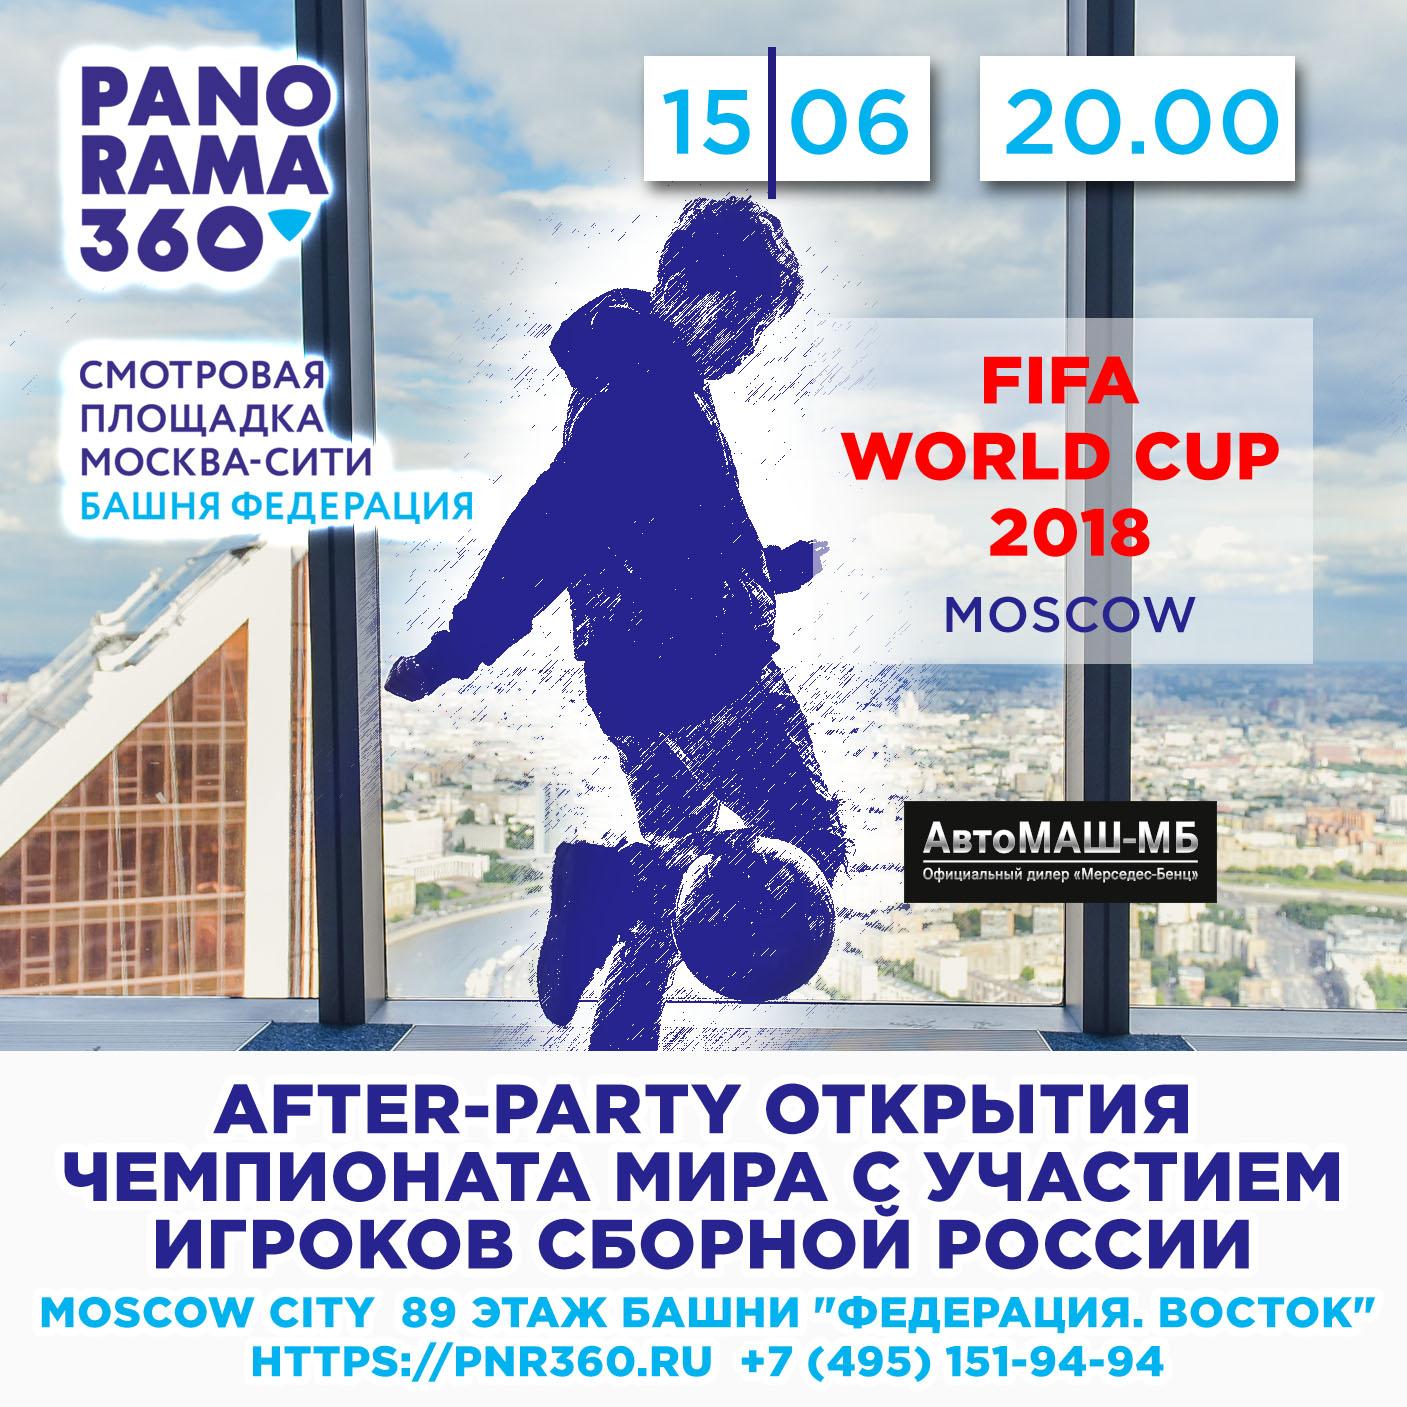 Сборная России на высоте: after-party открытия Чемпионата мира-2018 на самой высокой смотровой площадке Европы